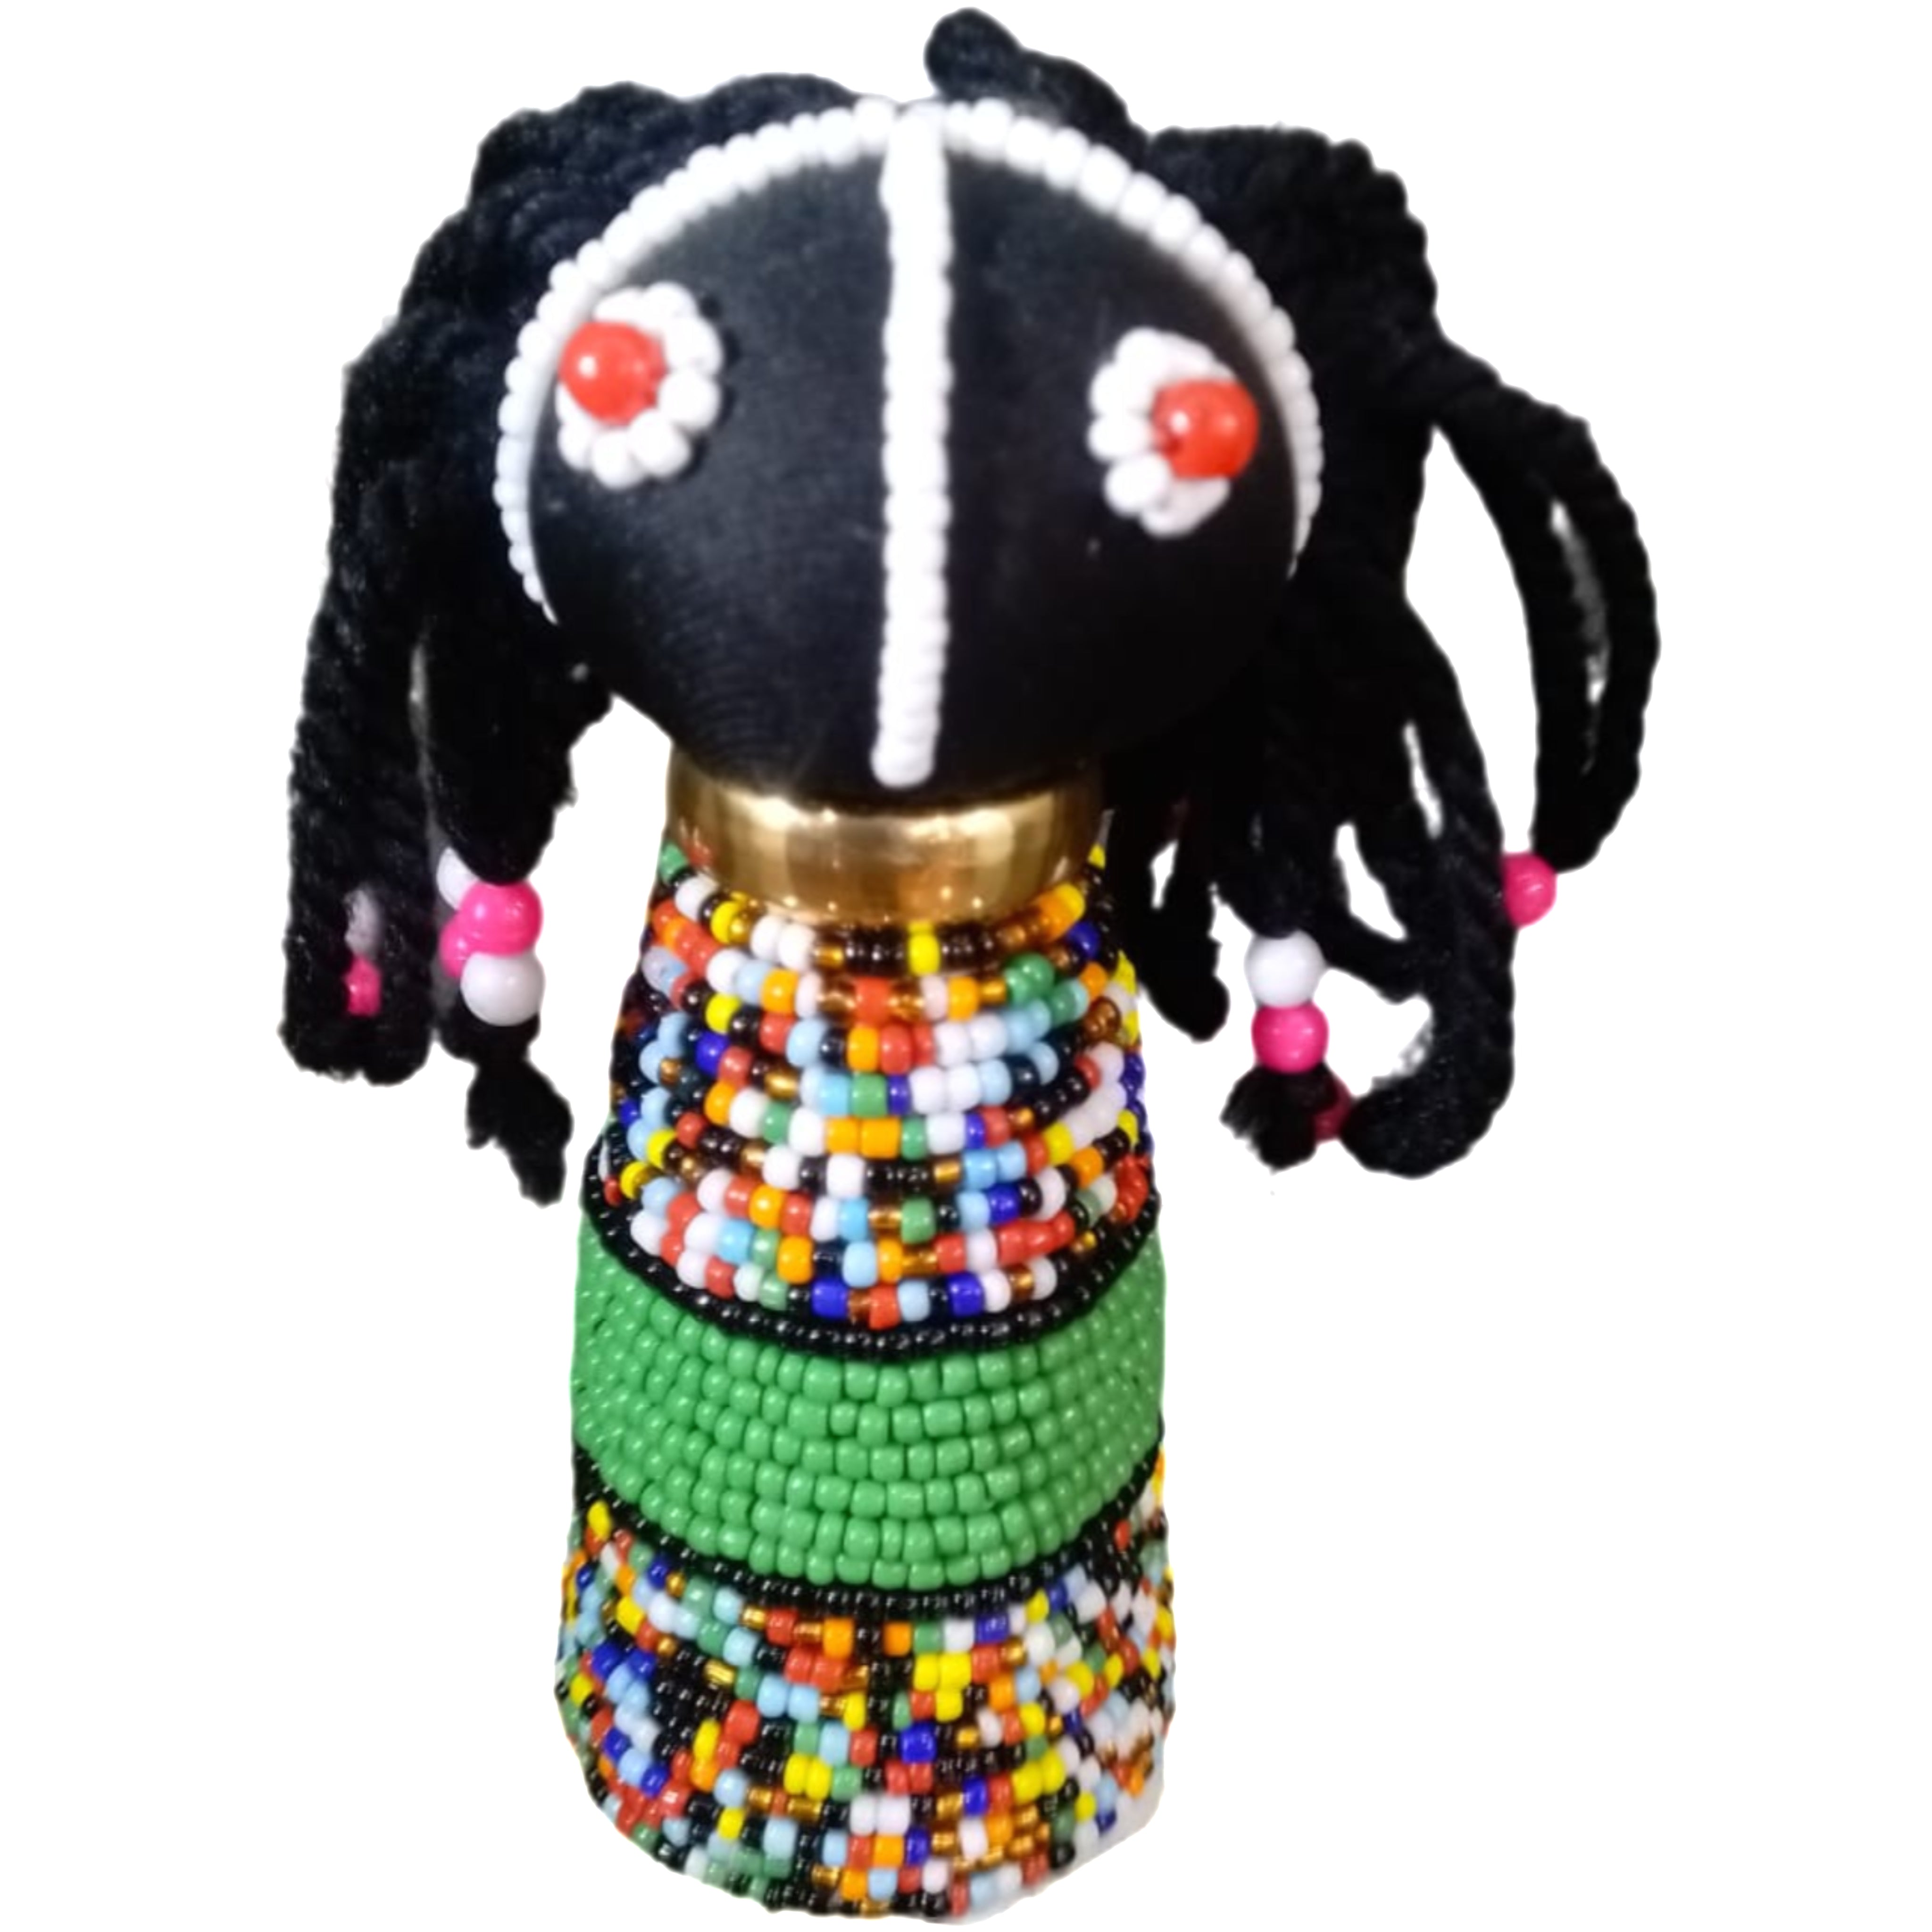 Ndebele beaded dolls